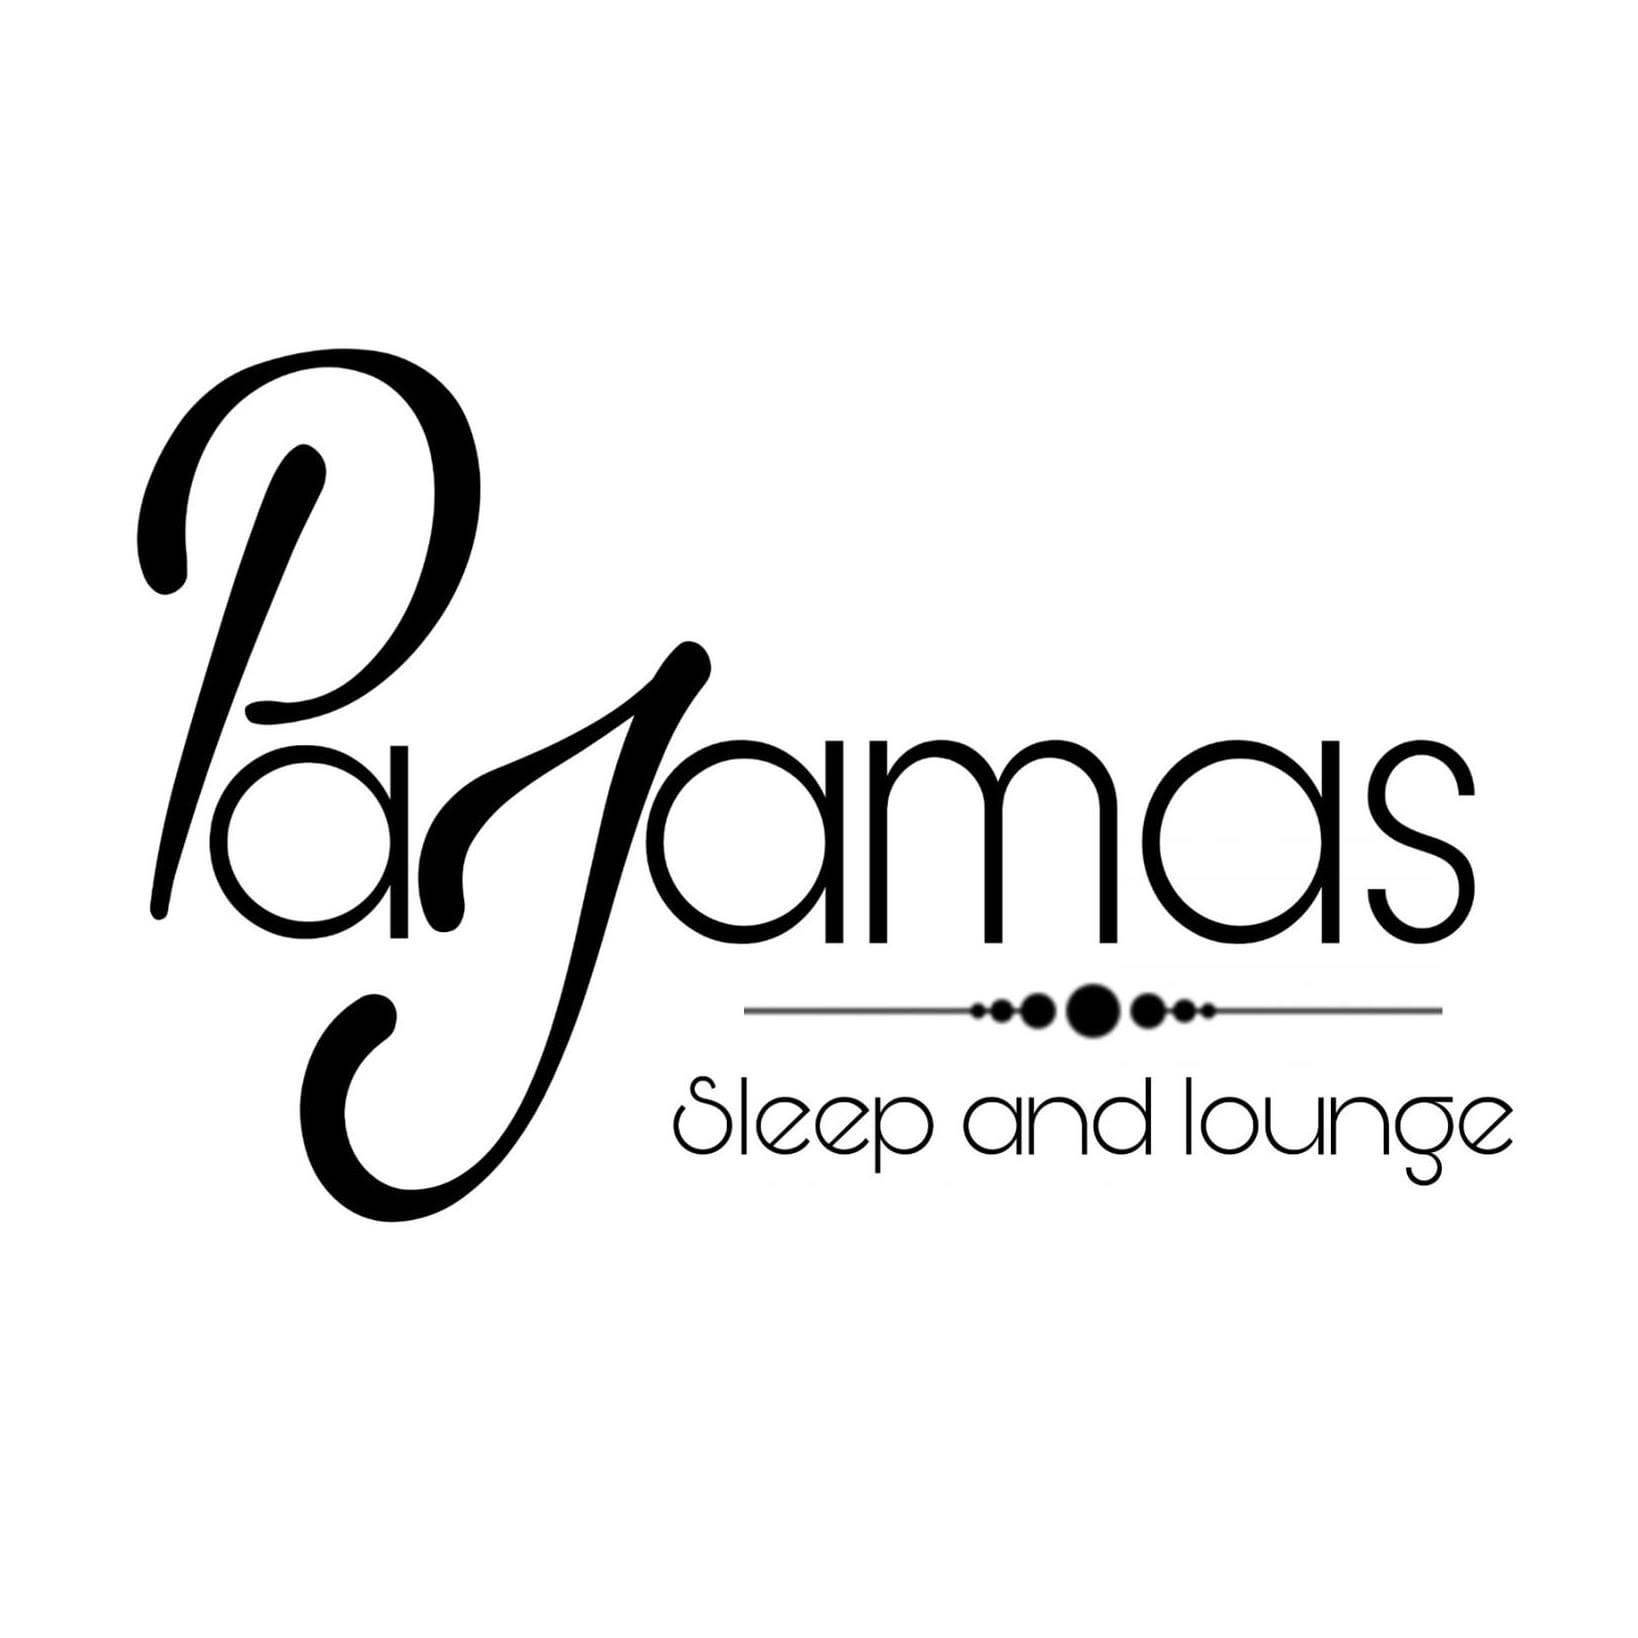 Pajamas - sleep and lounge